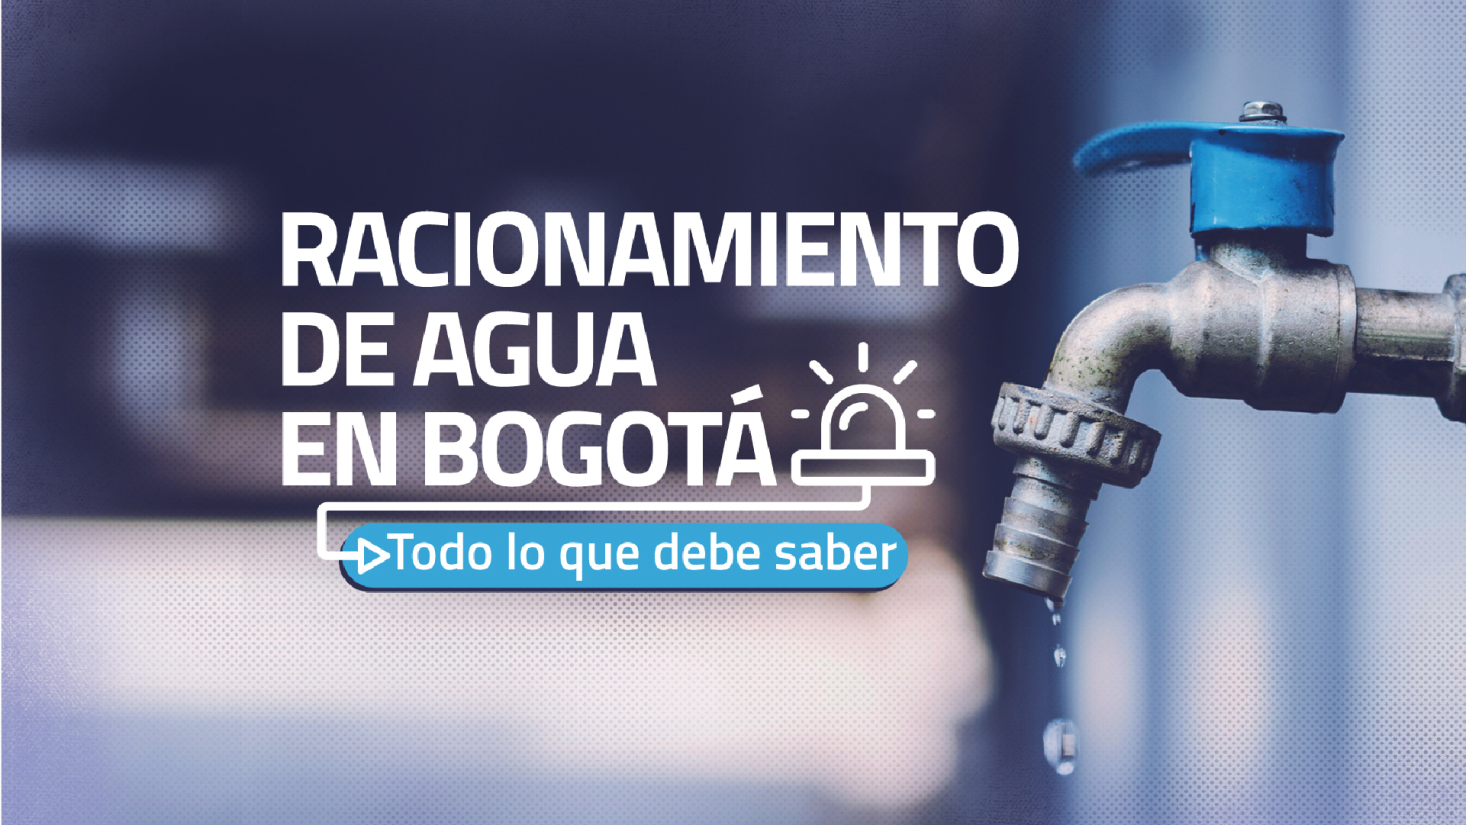 onamiento en Bogotá: consulte cuántos días sin agua le tocará este mes